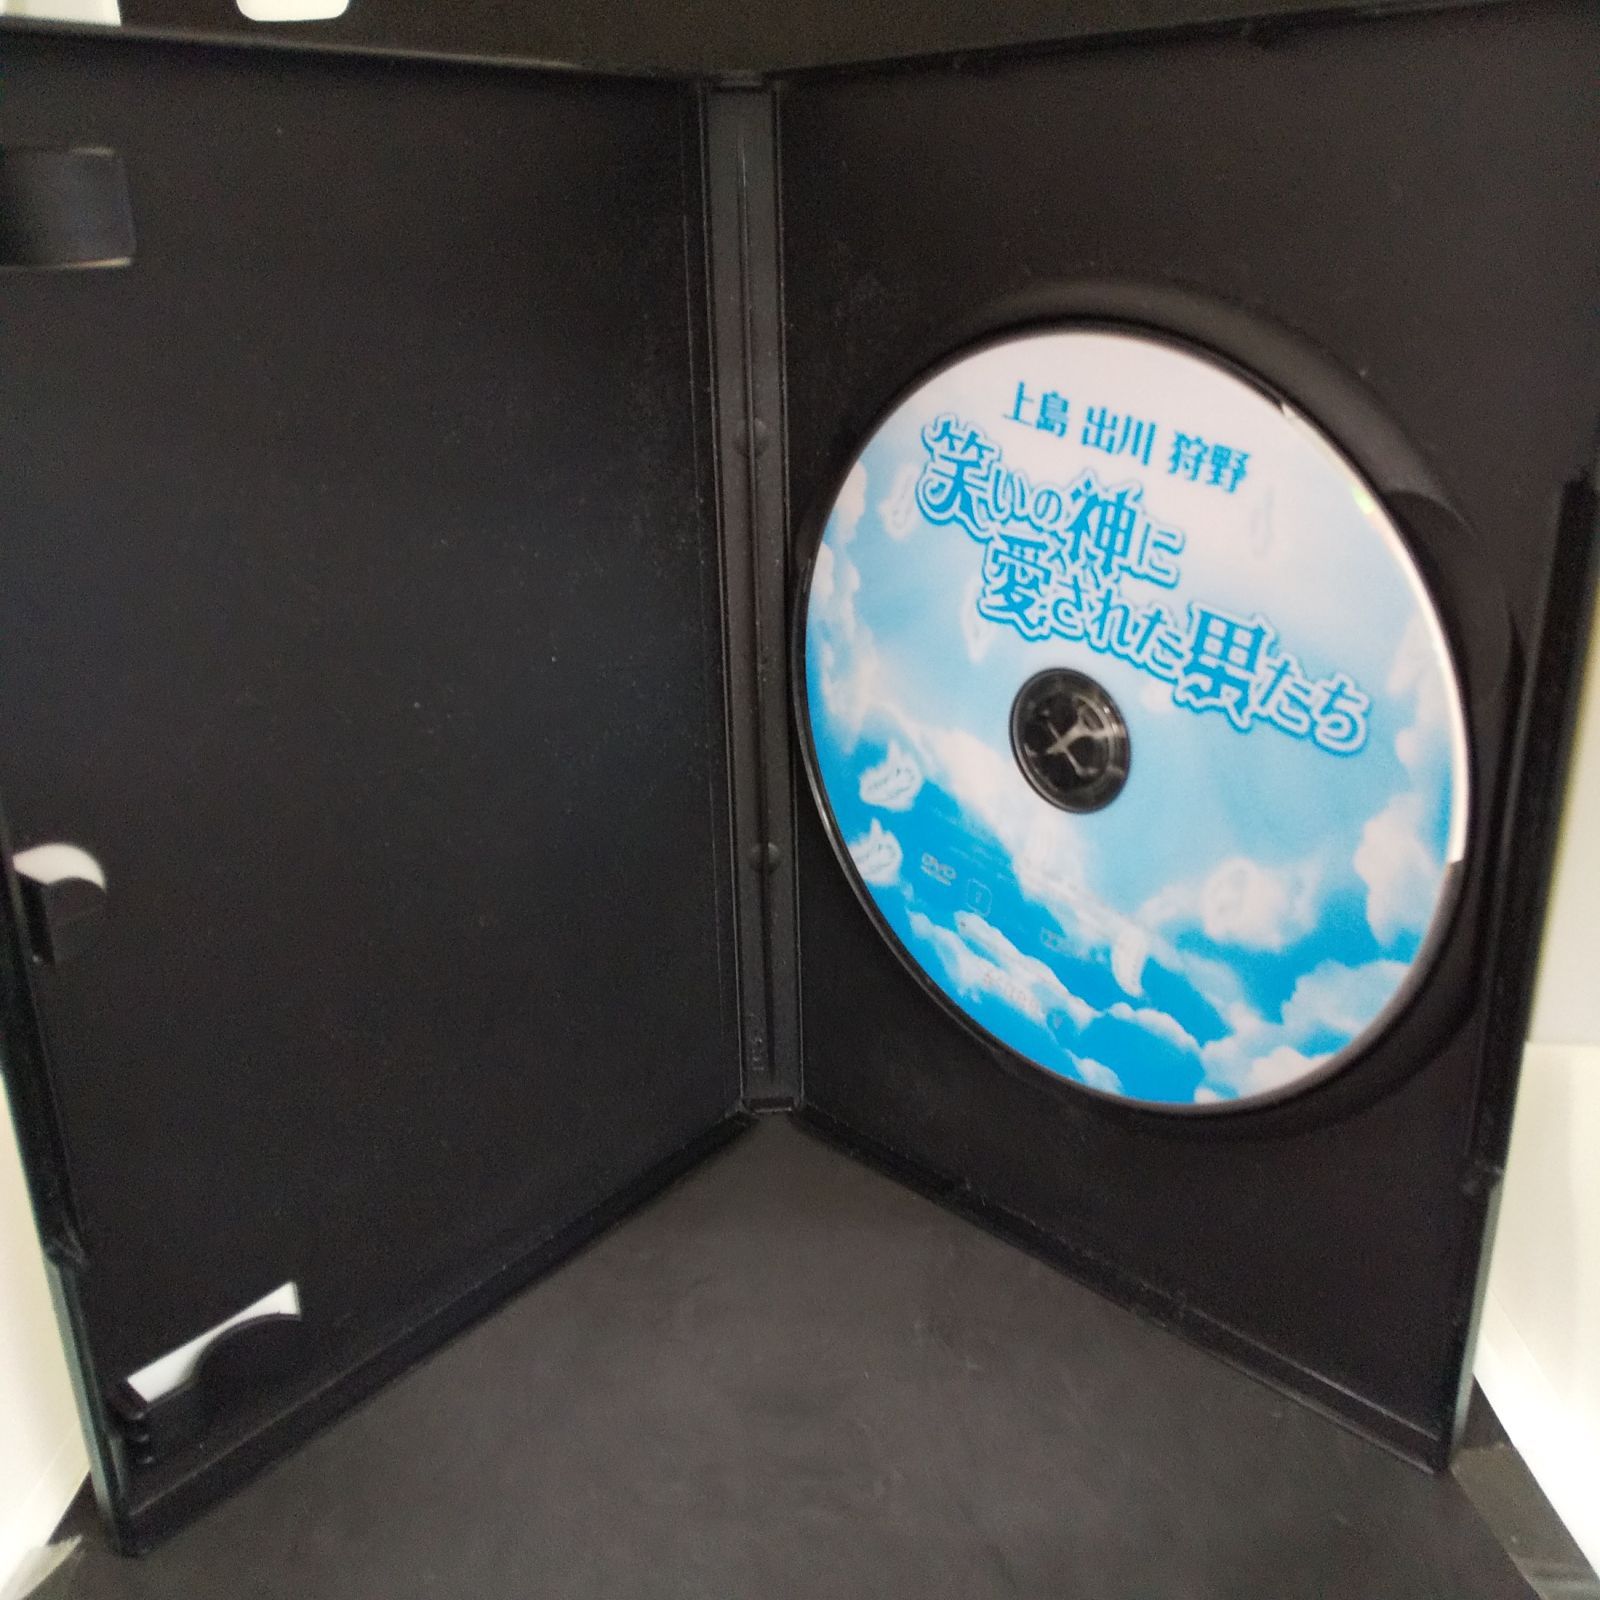 笑いの神に愛された男たち レンタル専用 中古 DVD ケース付き - メルカリ